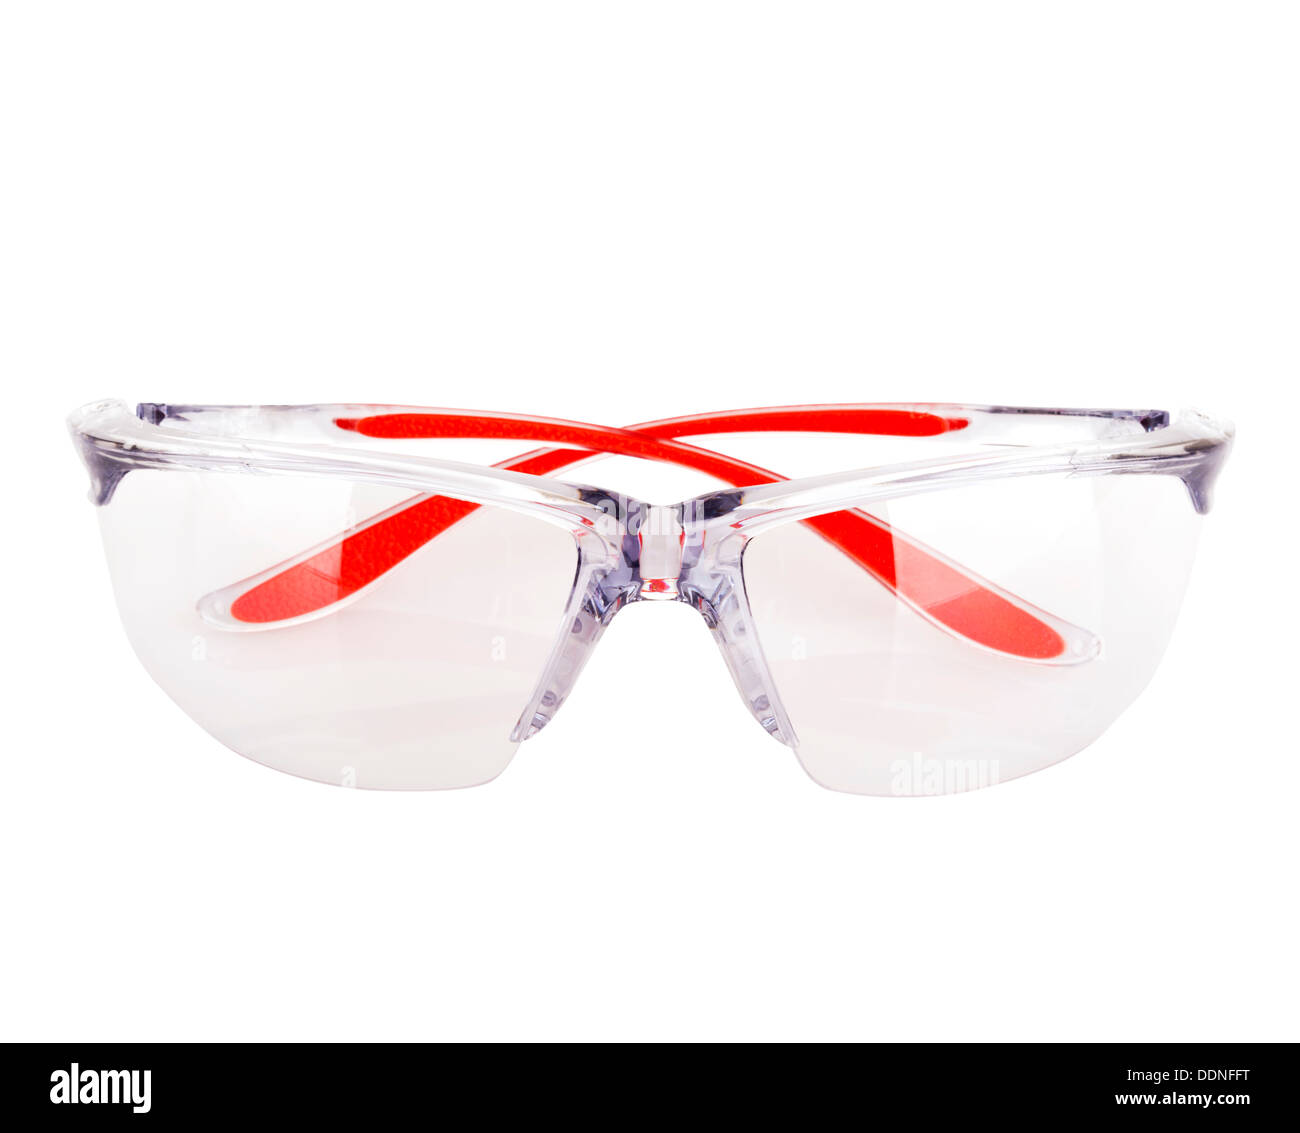 Les équipements de protection individuelle lunettes de sécurité isolated on white Banque D'Images